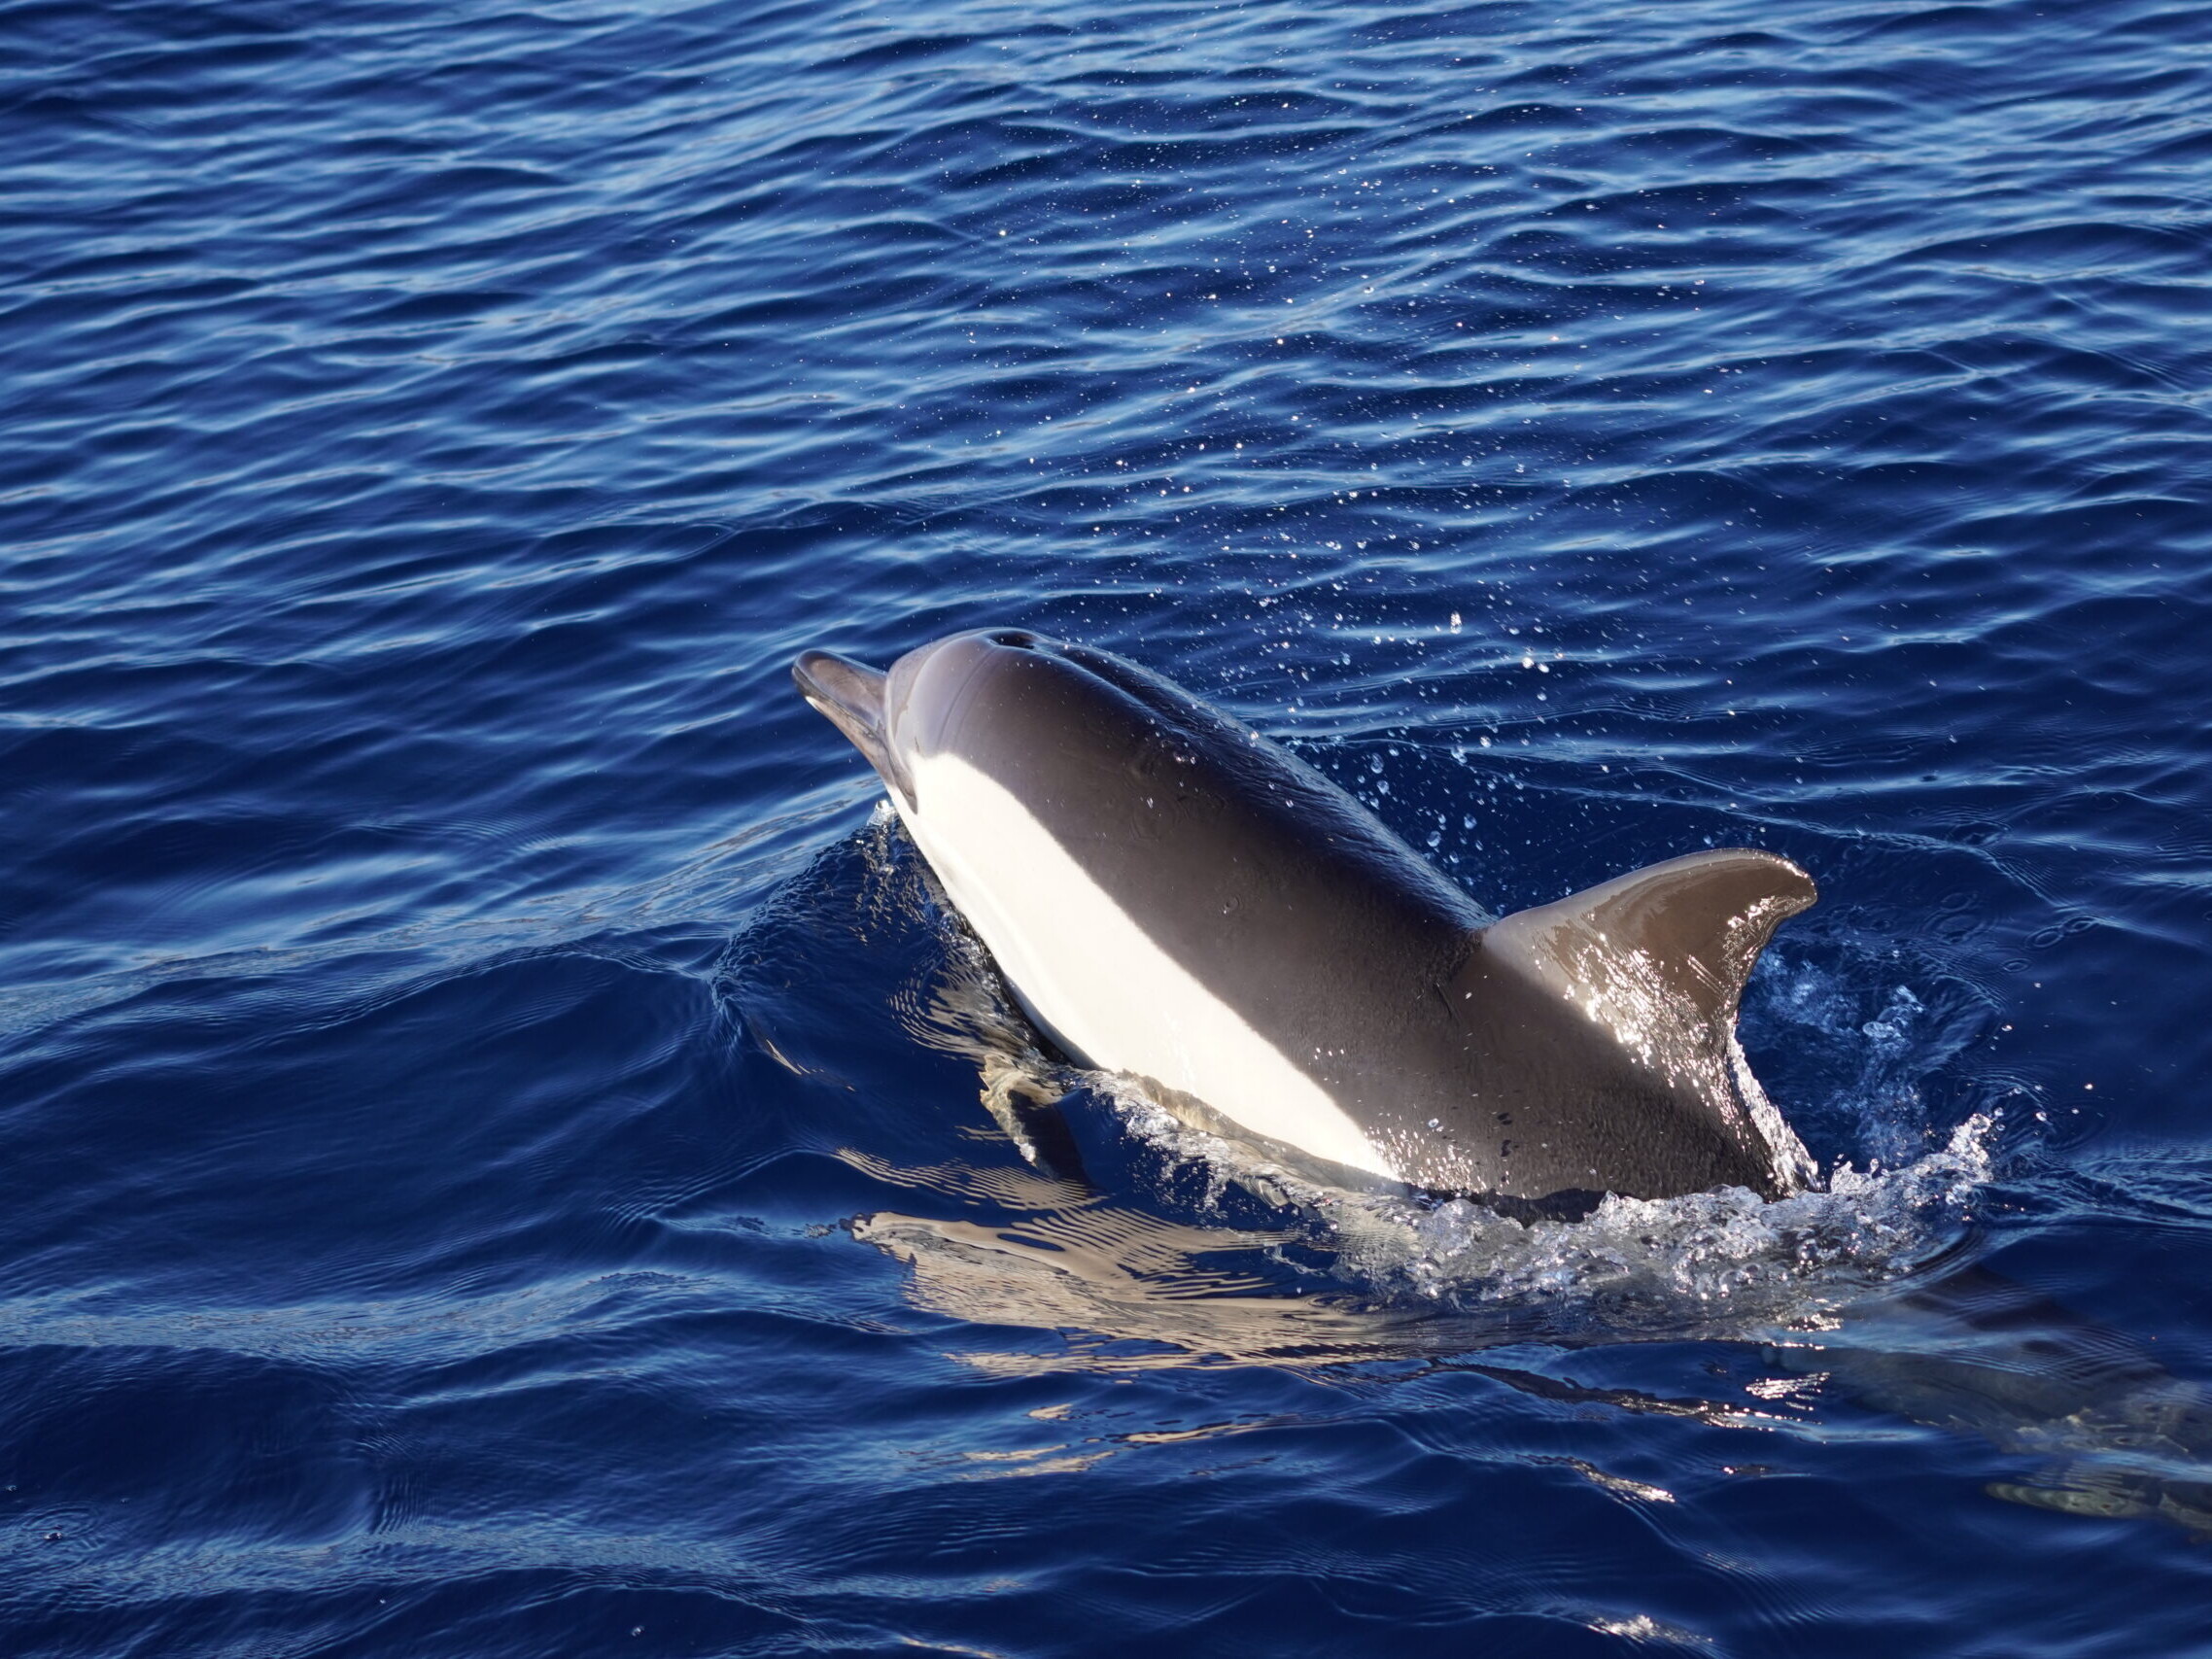 Sotogrande dolphin